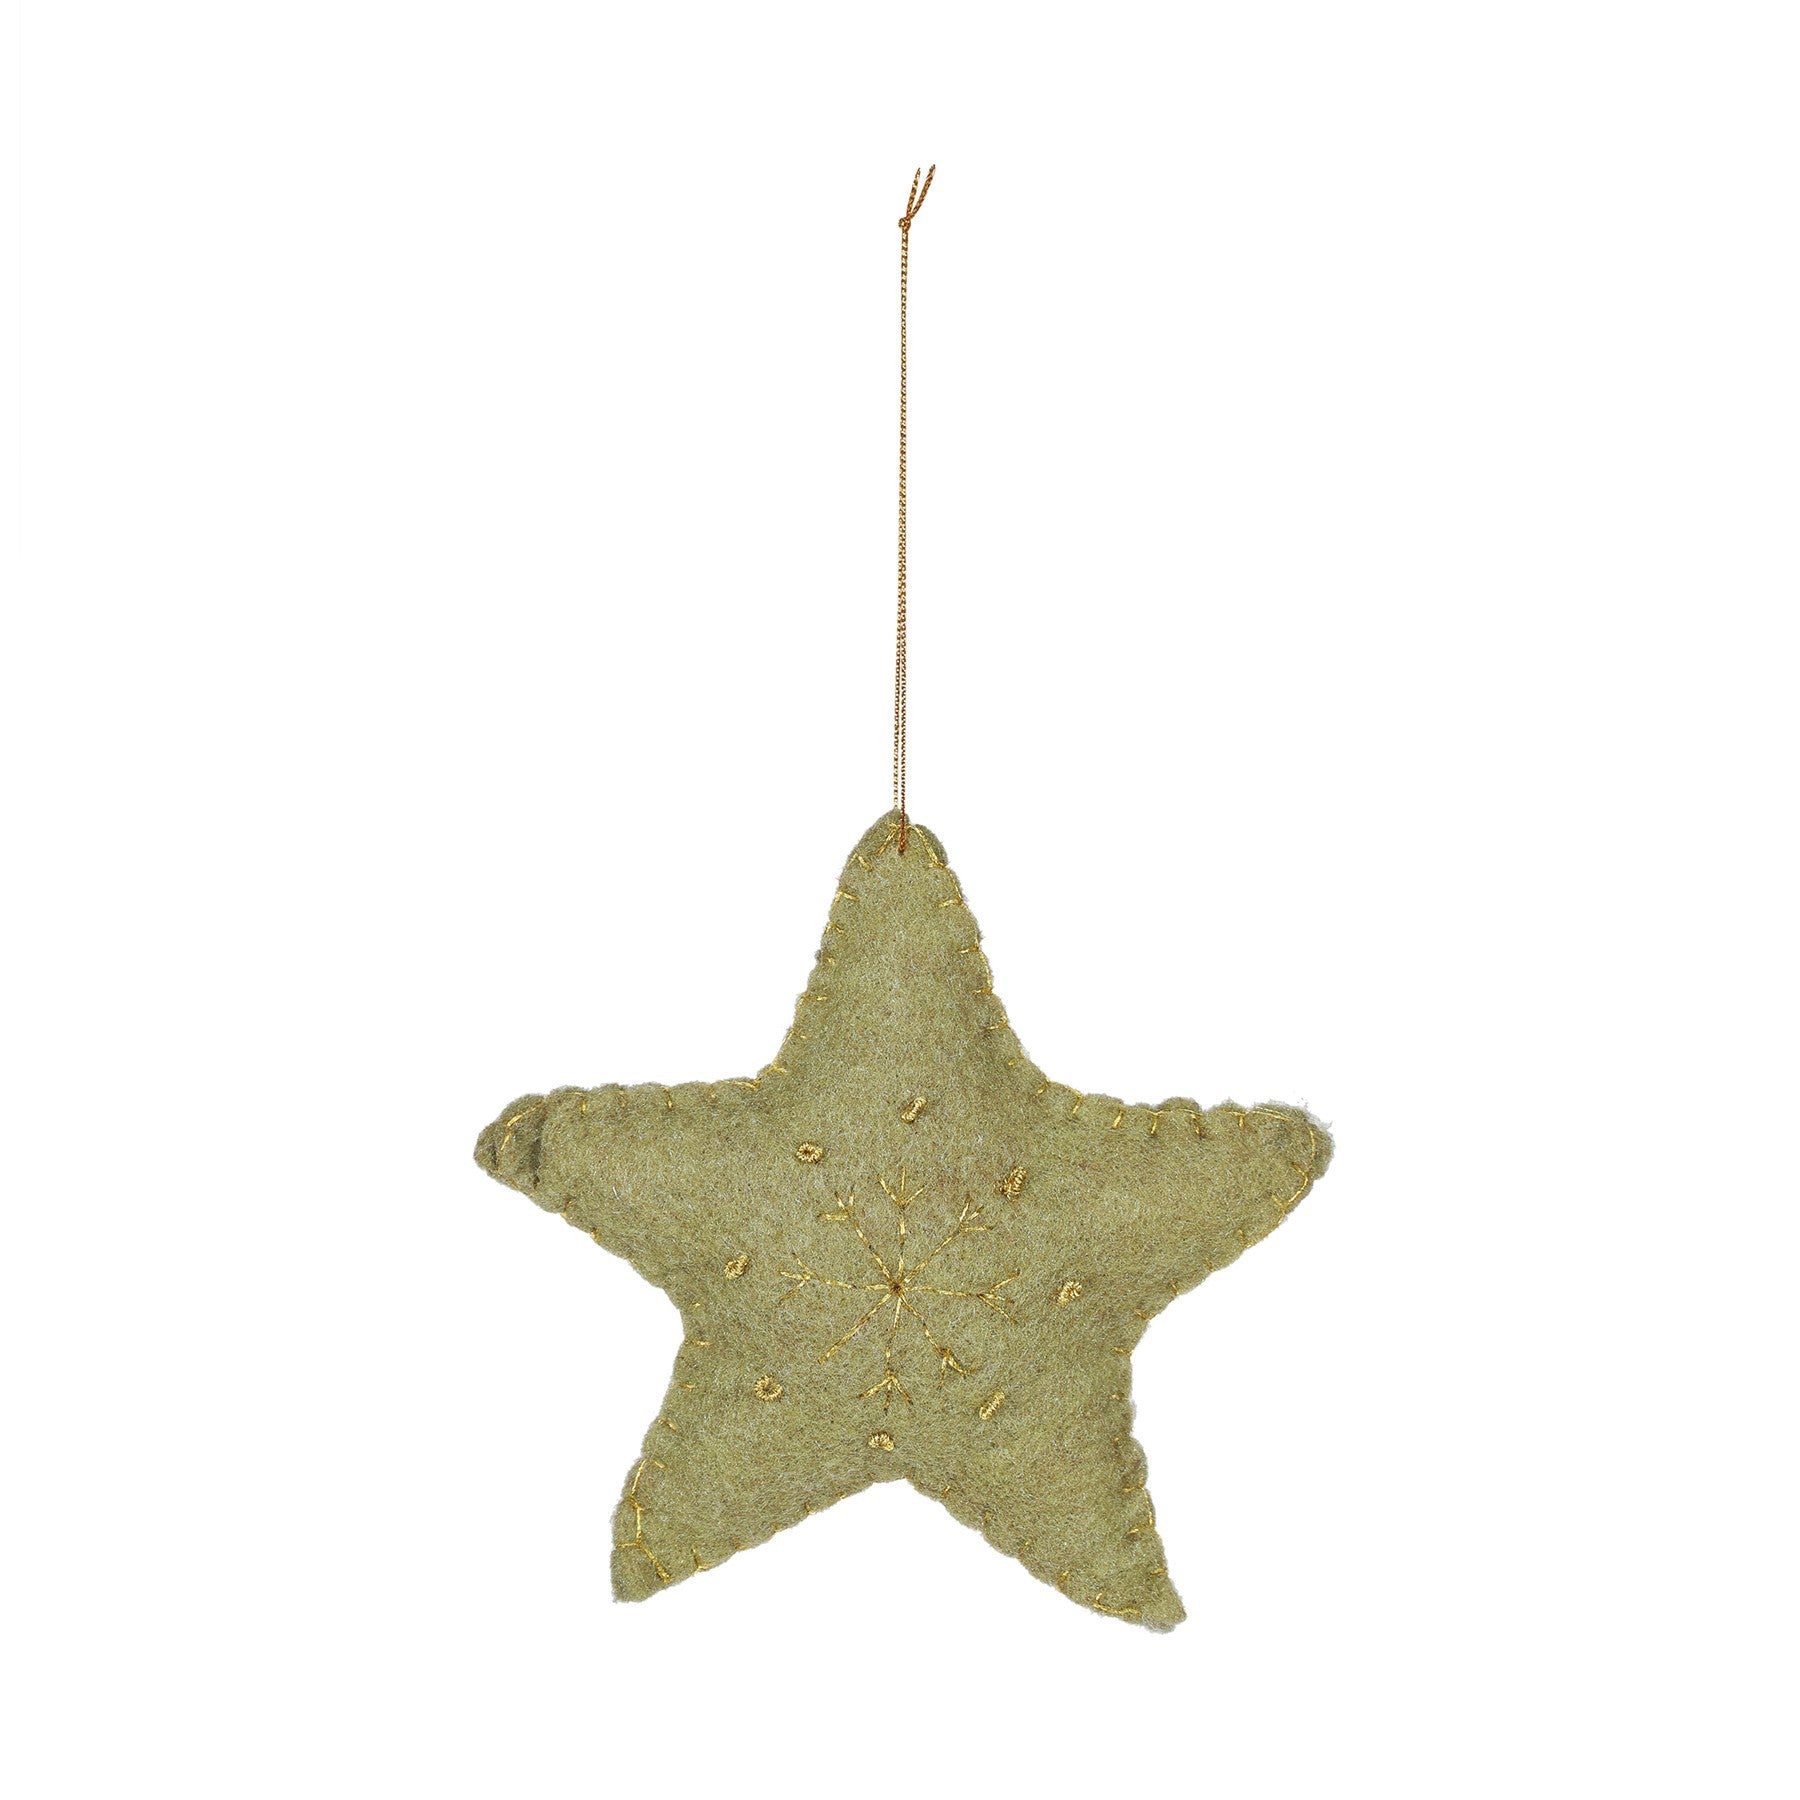 View Christmas Felt Star Hanger 15cm information